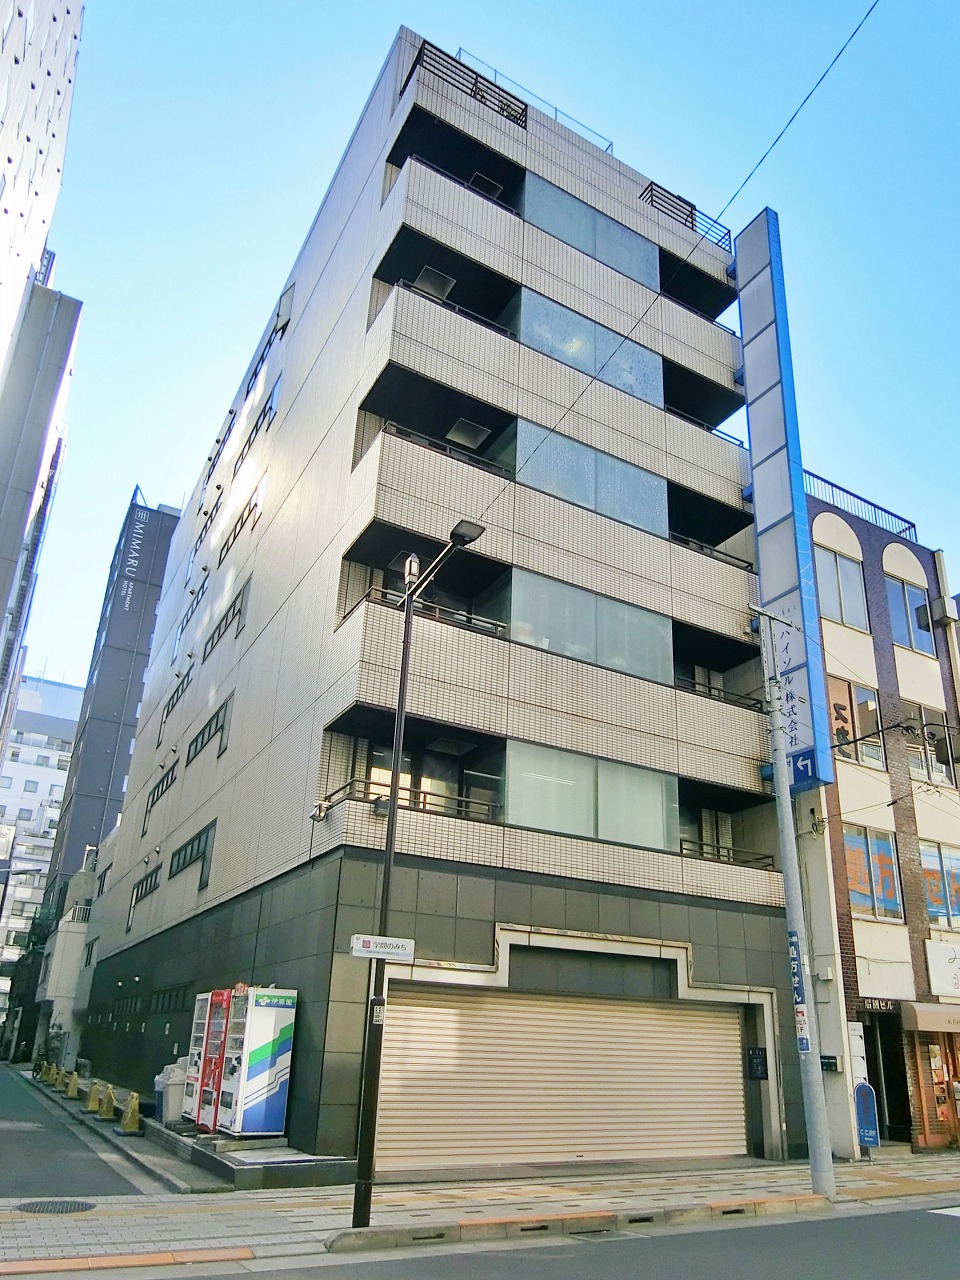 Hirokoji (Ueno Hirokoji)building